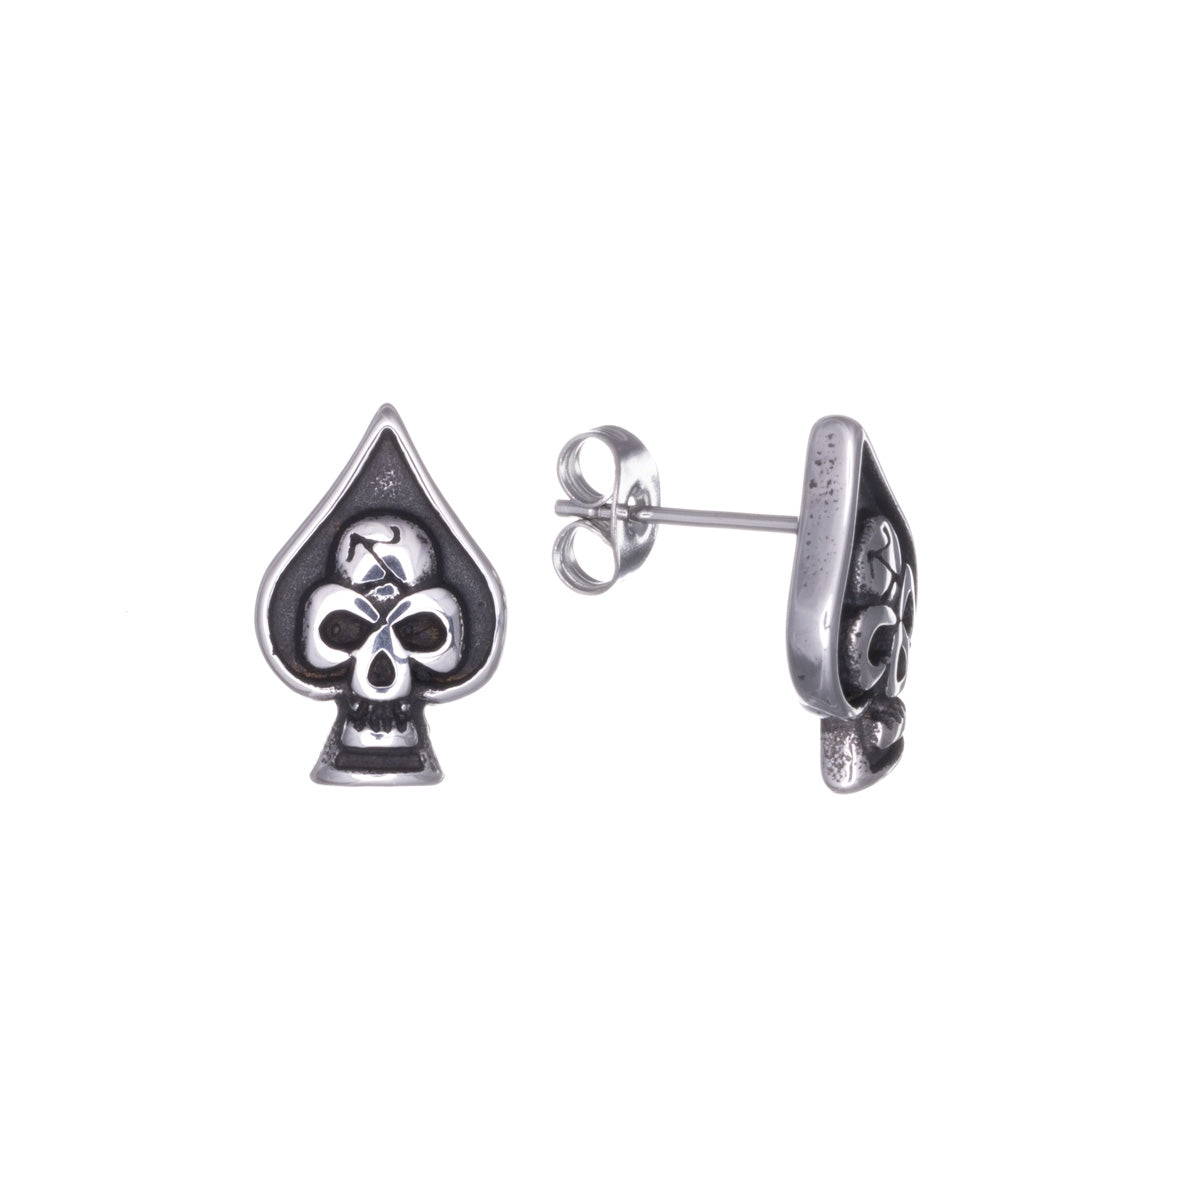 Steel Ace of Spades earrings with skull (Steel 316L)